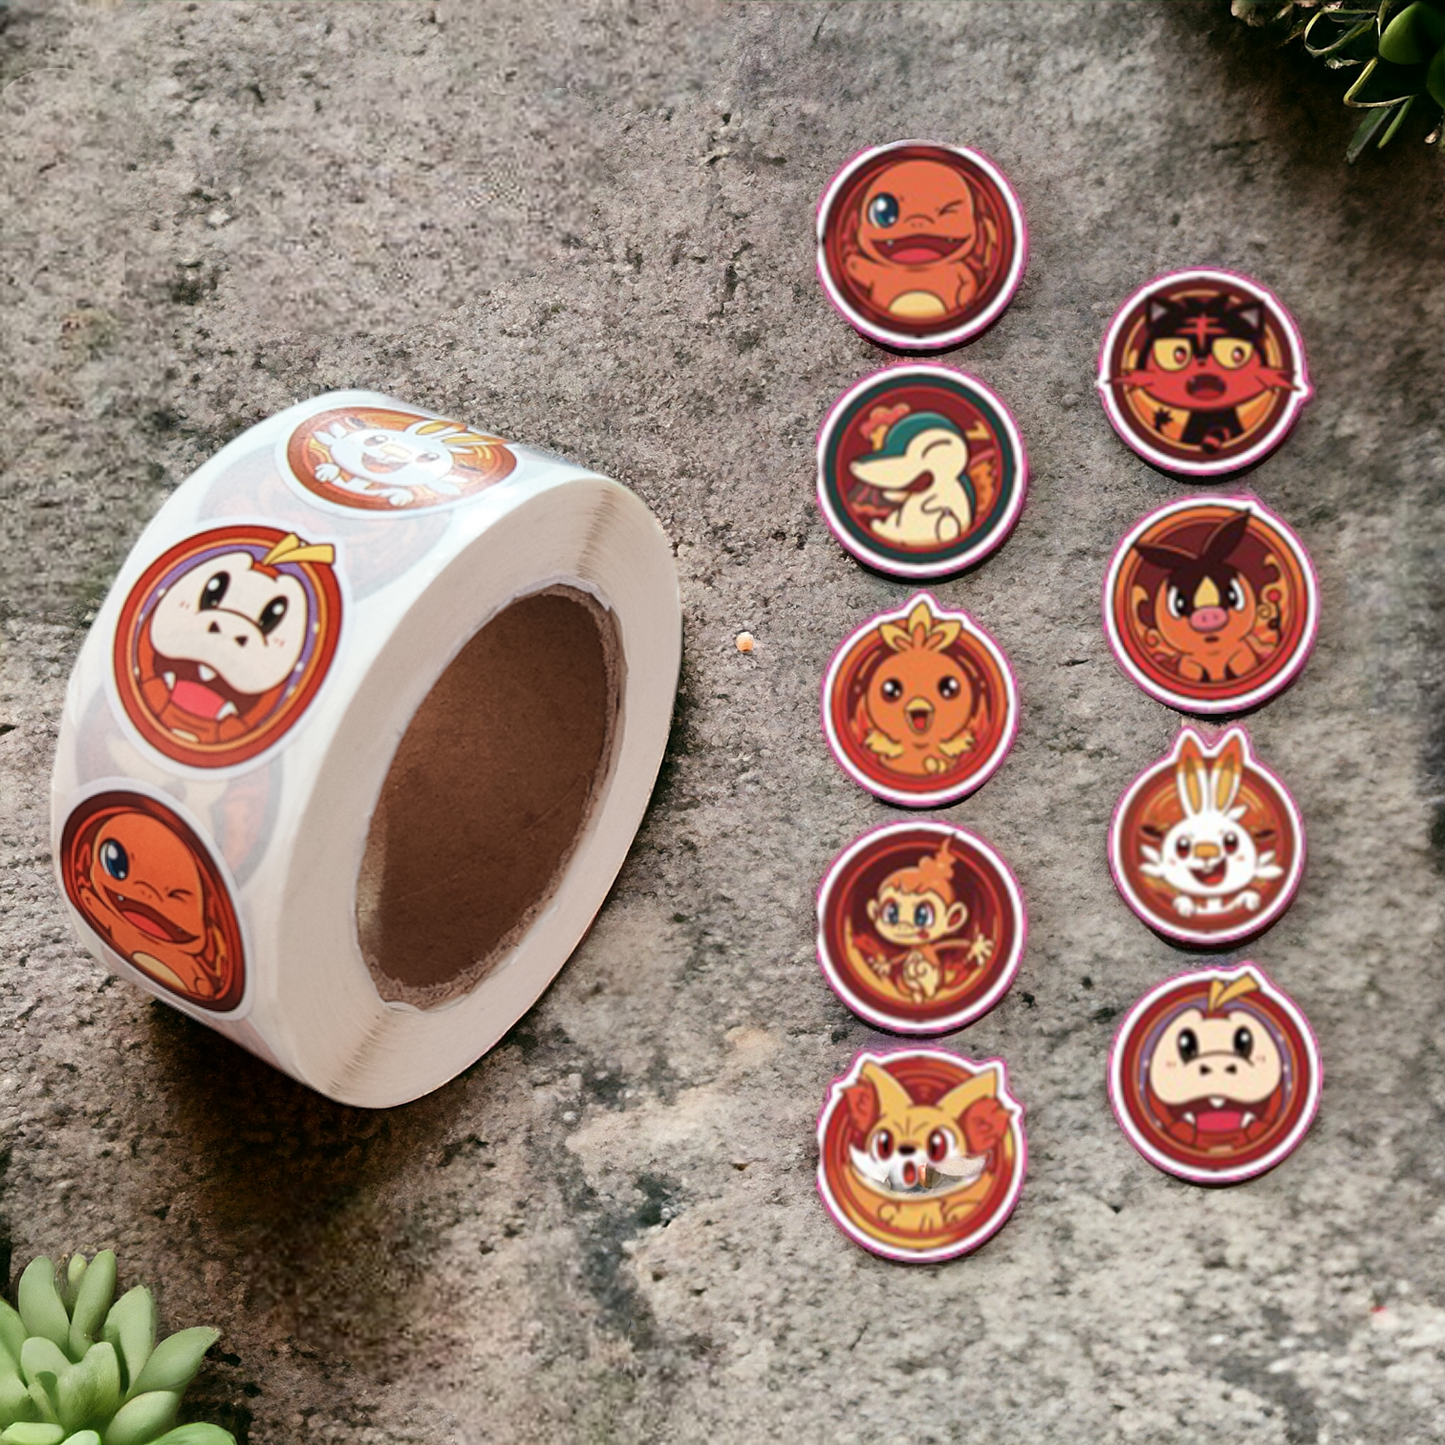 Pokémon sticker